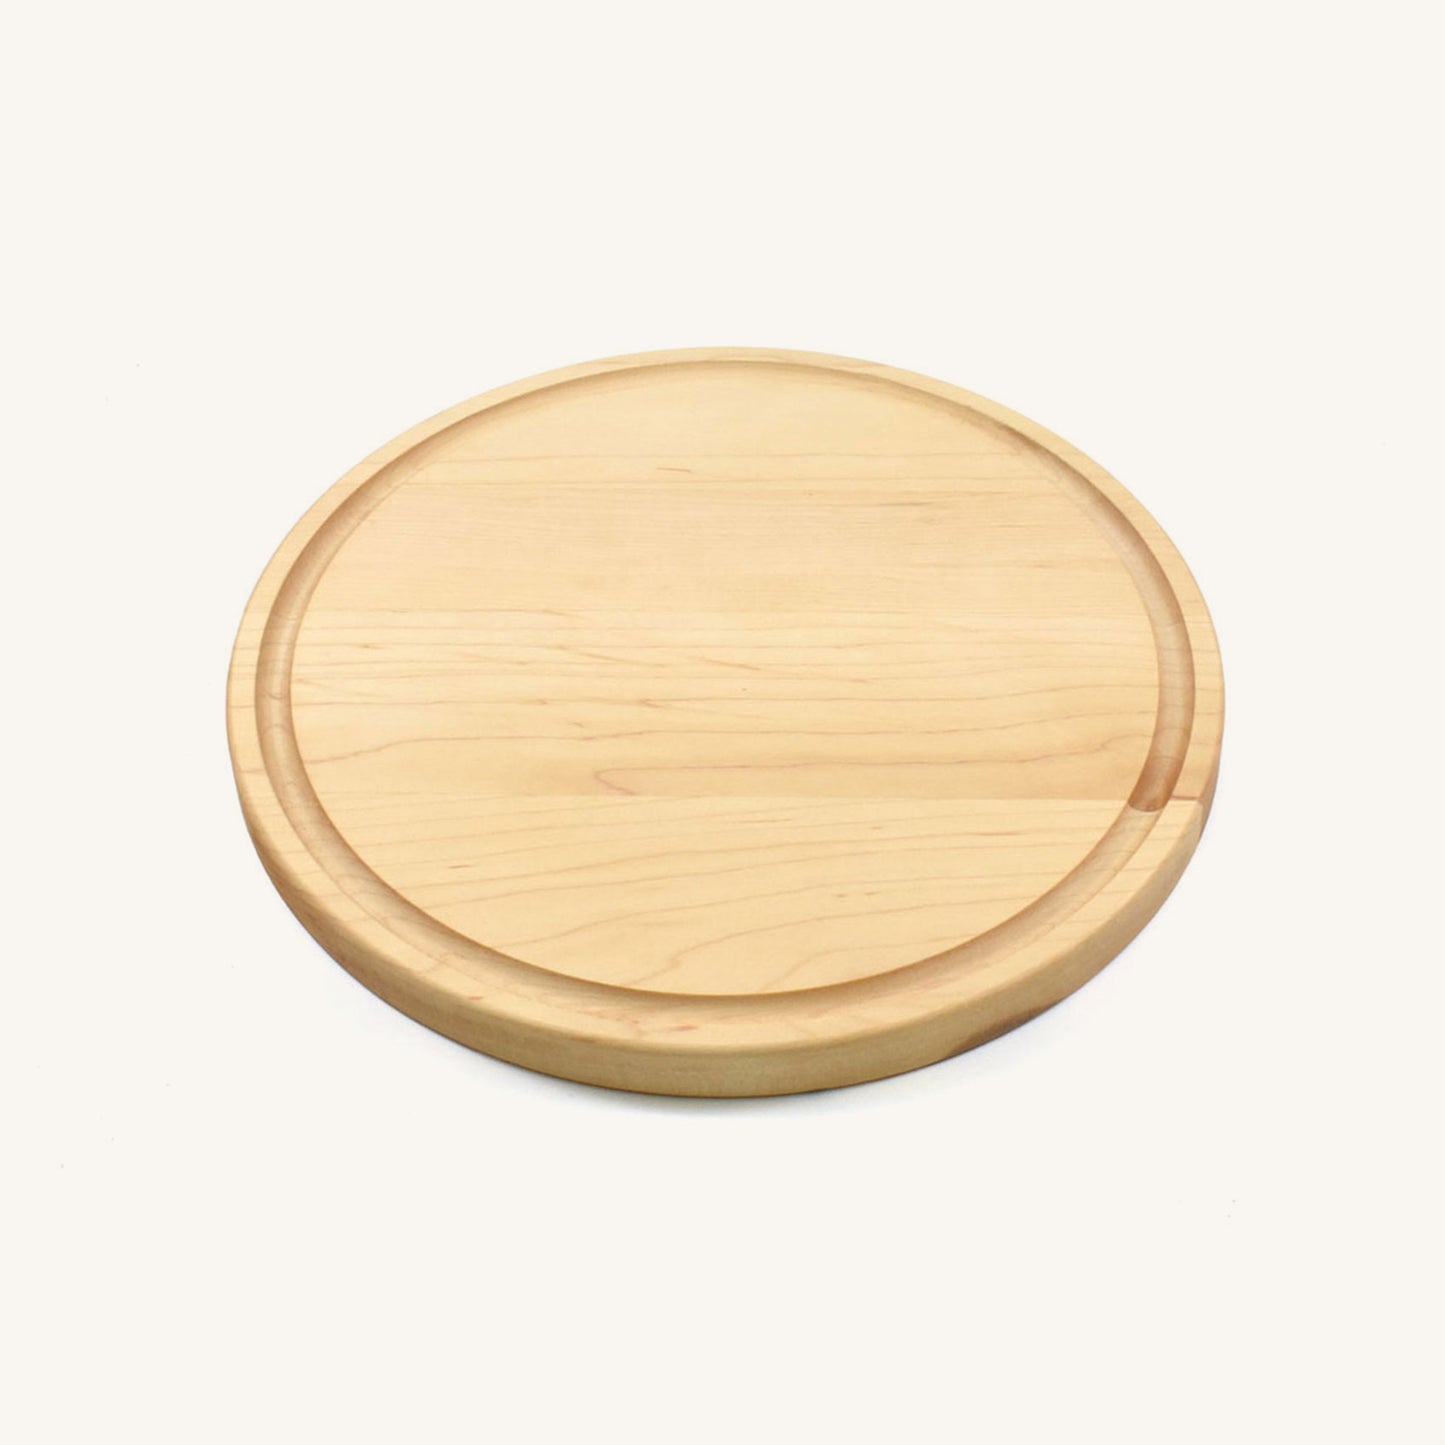 Round 10 1/2 Inch Wood Cutting Board